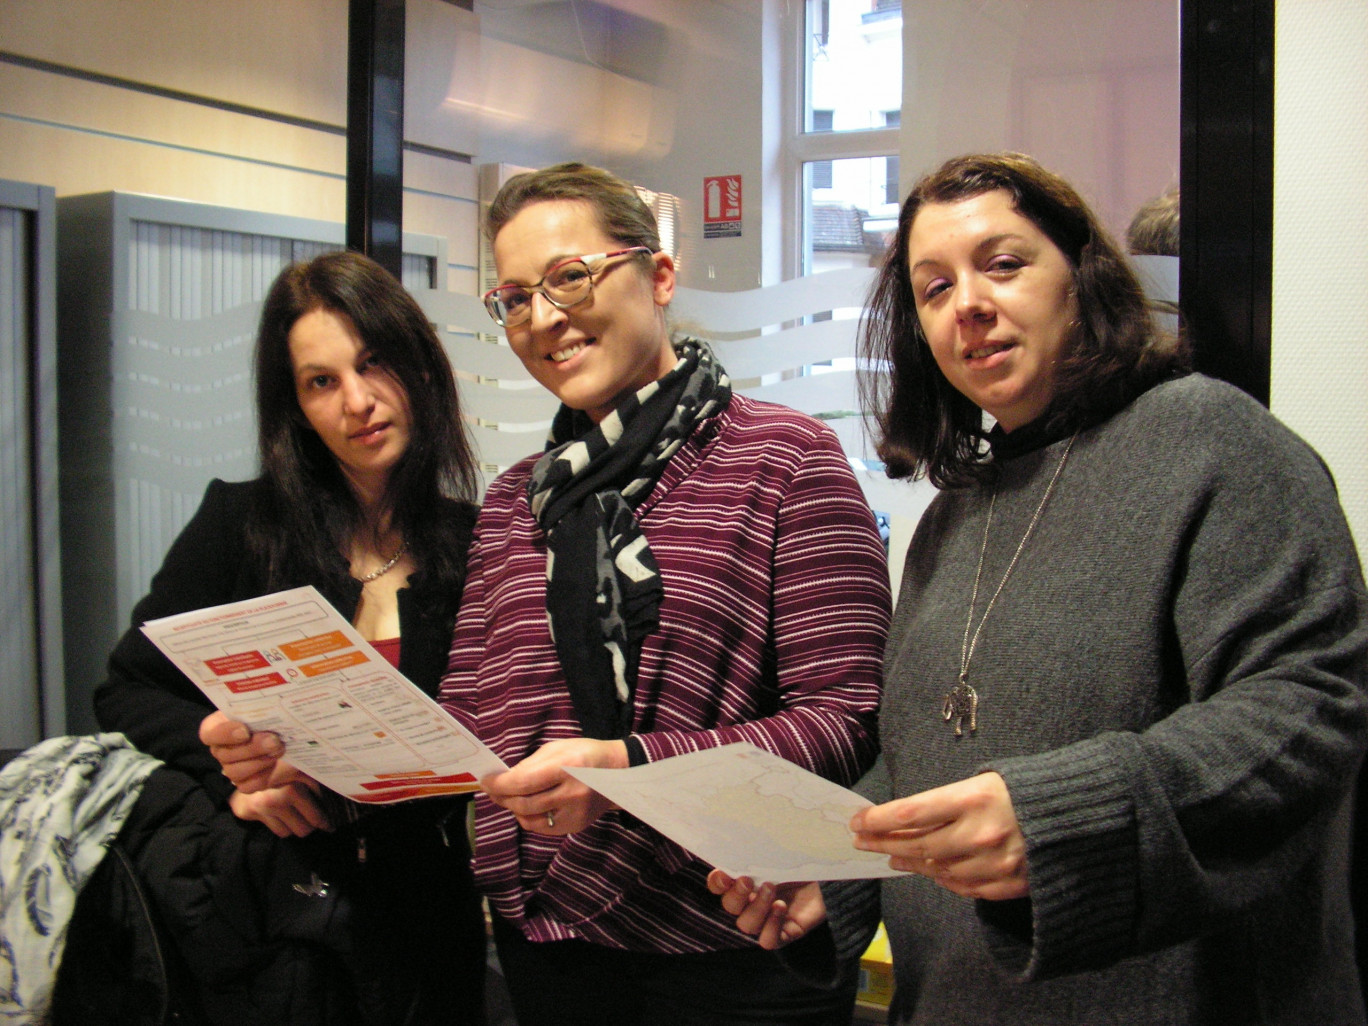 L’équipe de Wimoov qui s’occupe de la plateforme mobilité de Caudry. De gauche à droite : Marlène Herbert, Jenny Hedbaut, conseillères en mobilité et Laetitia Préhoubert, assistante administrative.